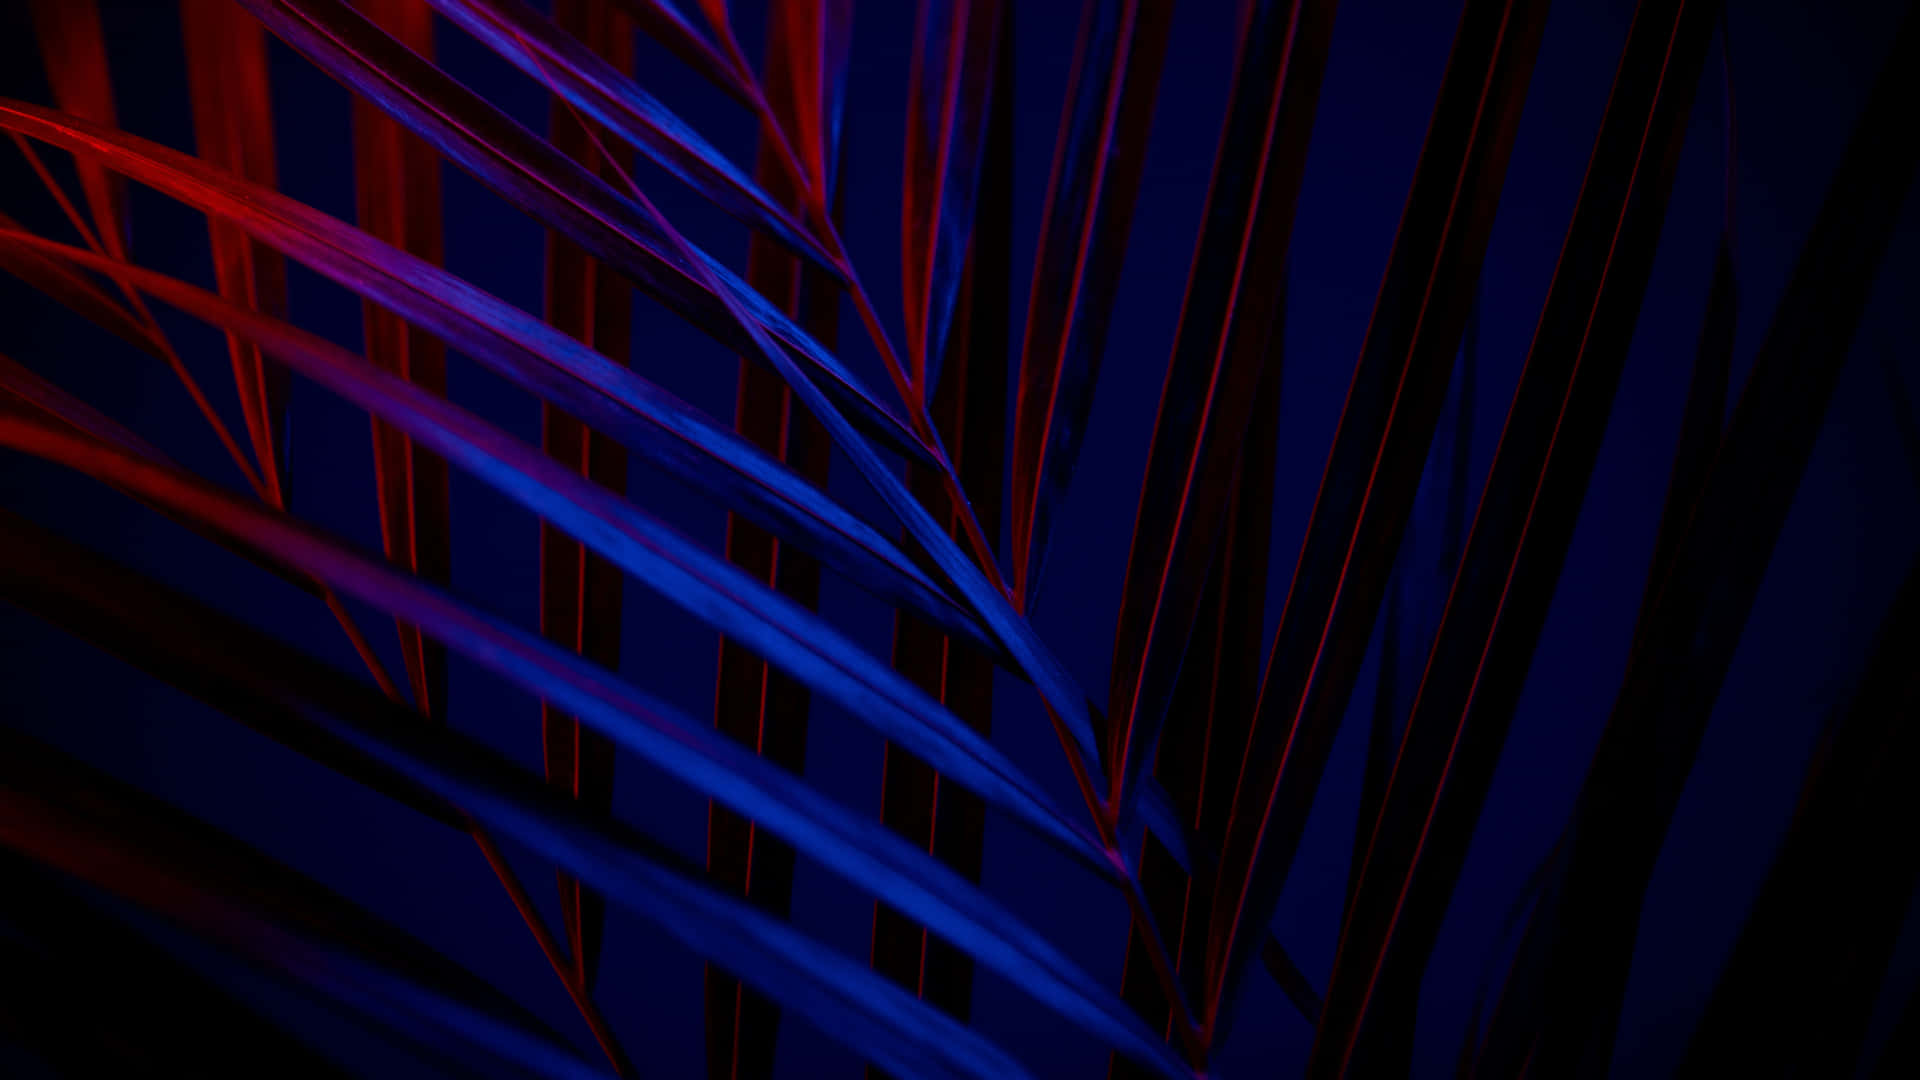 Sfondoamoled Foglia Di Palma Neon In Risoluzione 1440p